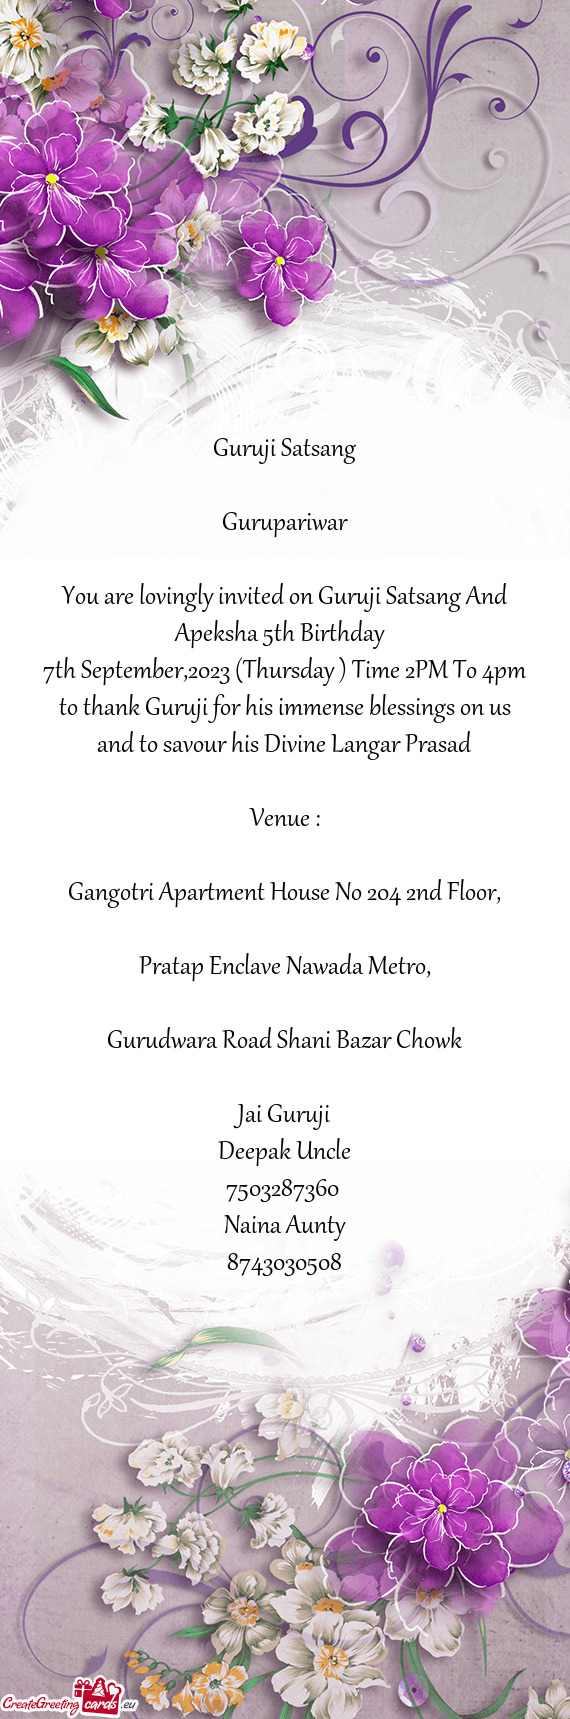 You are lovingly invited on Guruji Satsang And Apeksha 5th Birthday